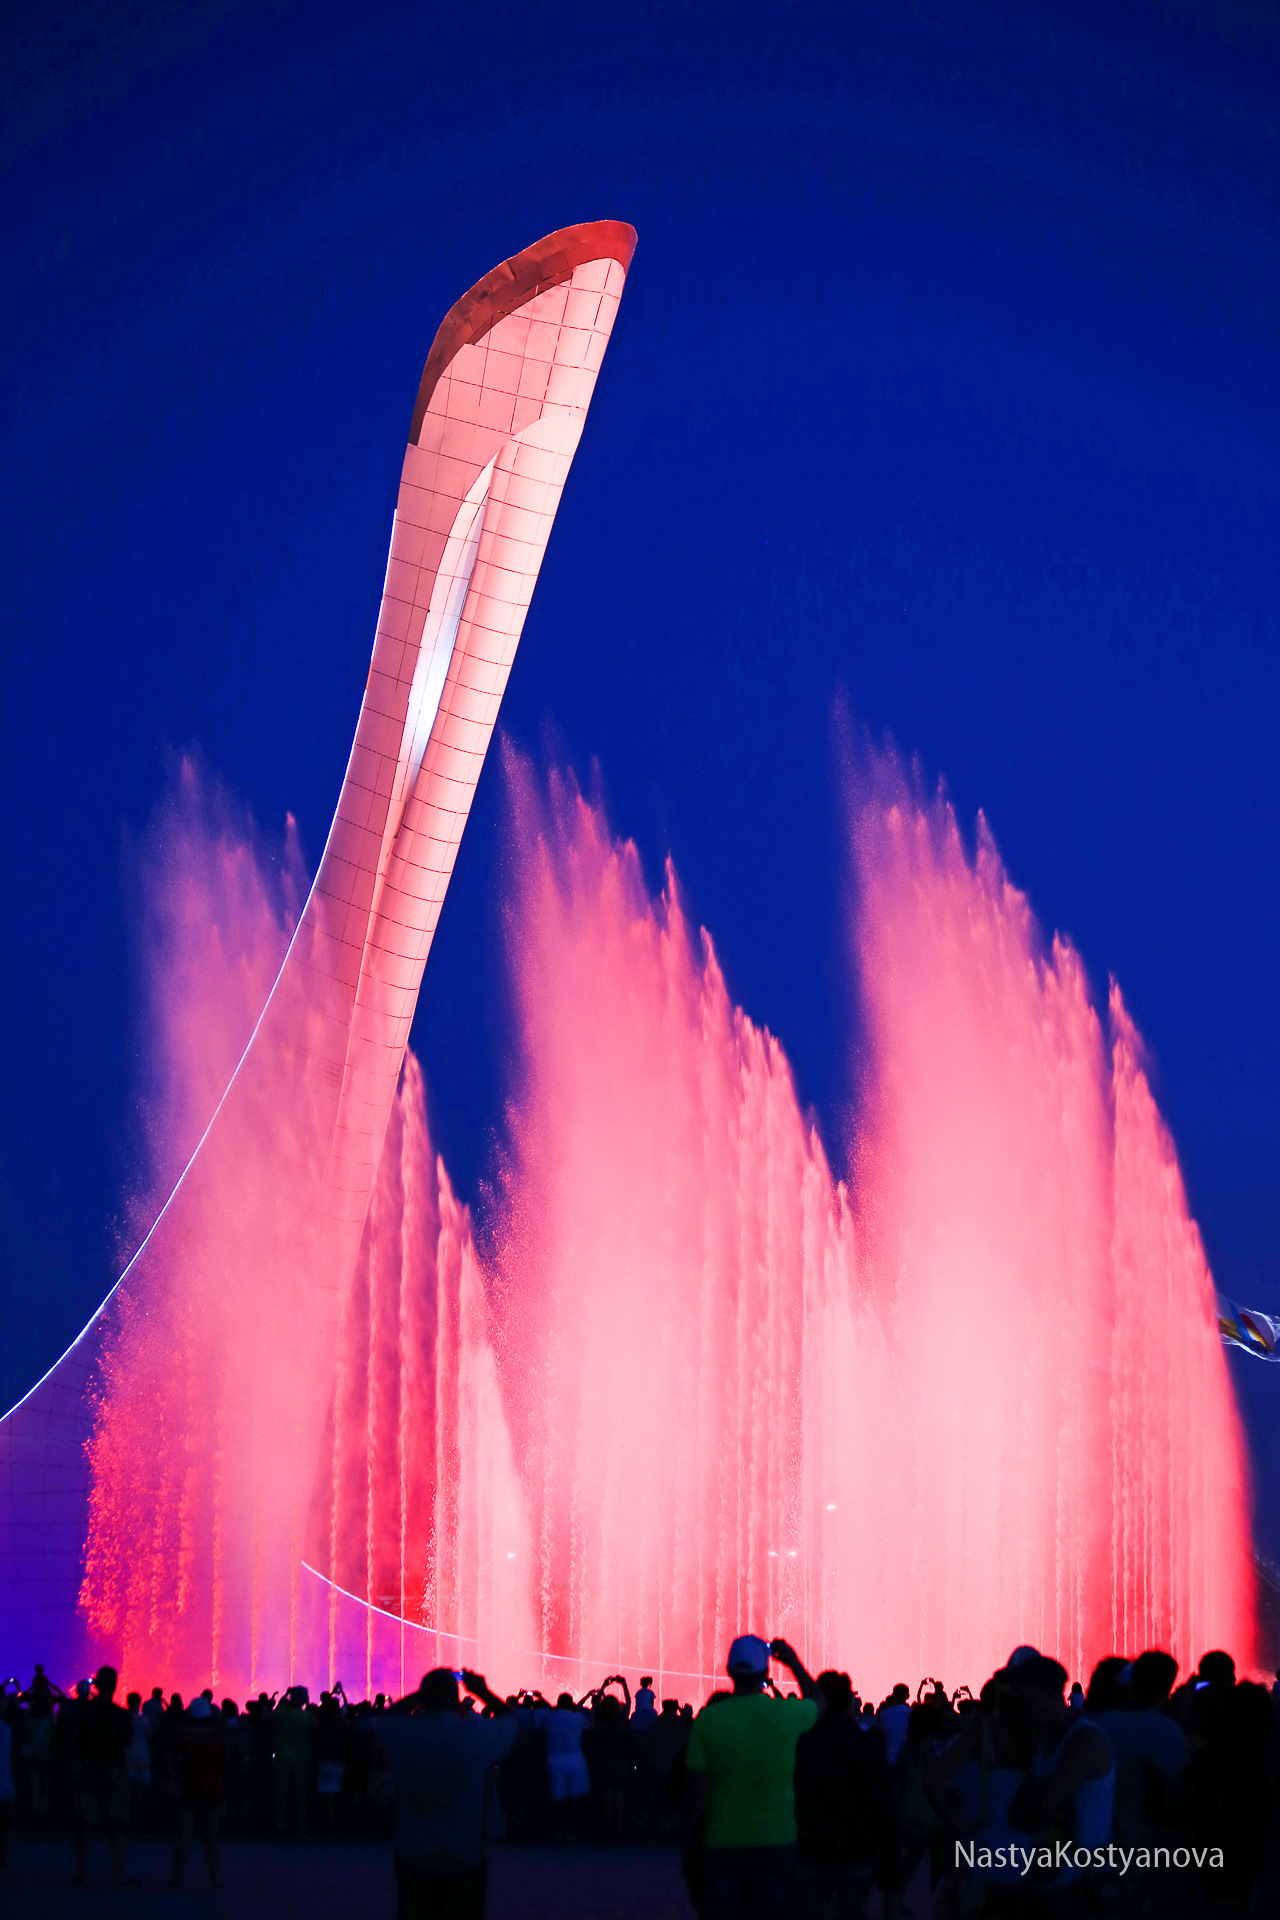 Олимпийский парк сегодня поющие фонтаны. Поющие фонтаны Сочи Олимпийский парк. Музыкальный фонтан в Адлере Олимпийский парк. Сочи парк фонтан. Шоу поющих фонтанов в Олимпийском парке Сочи.